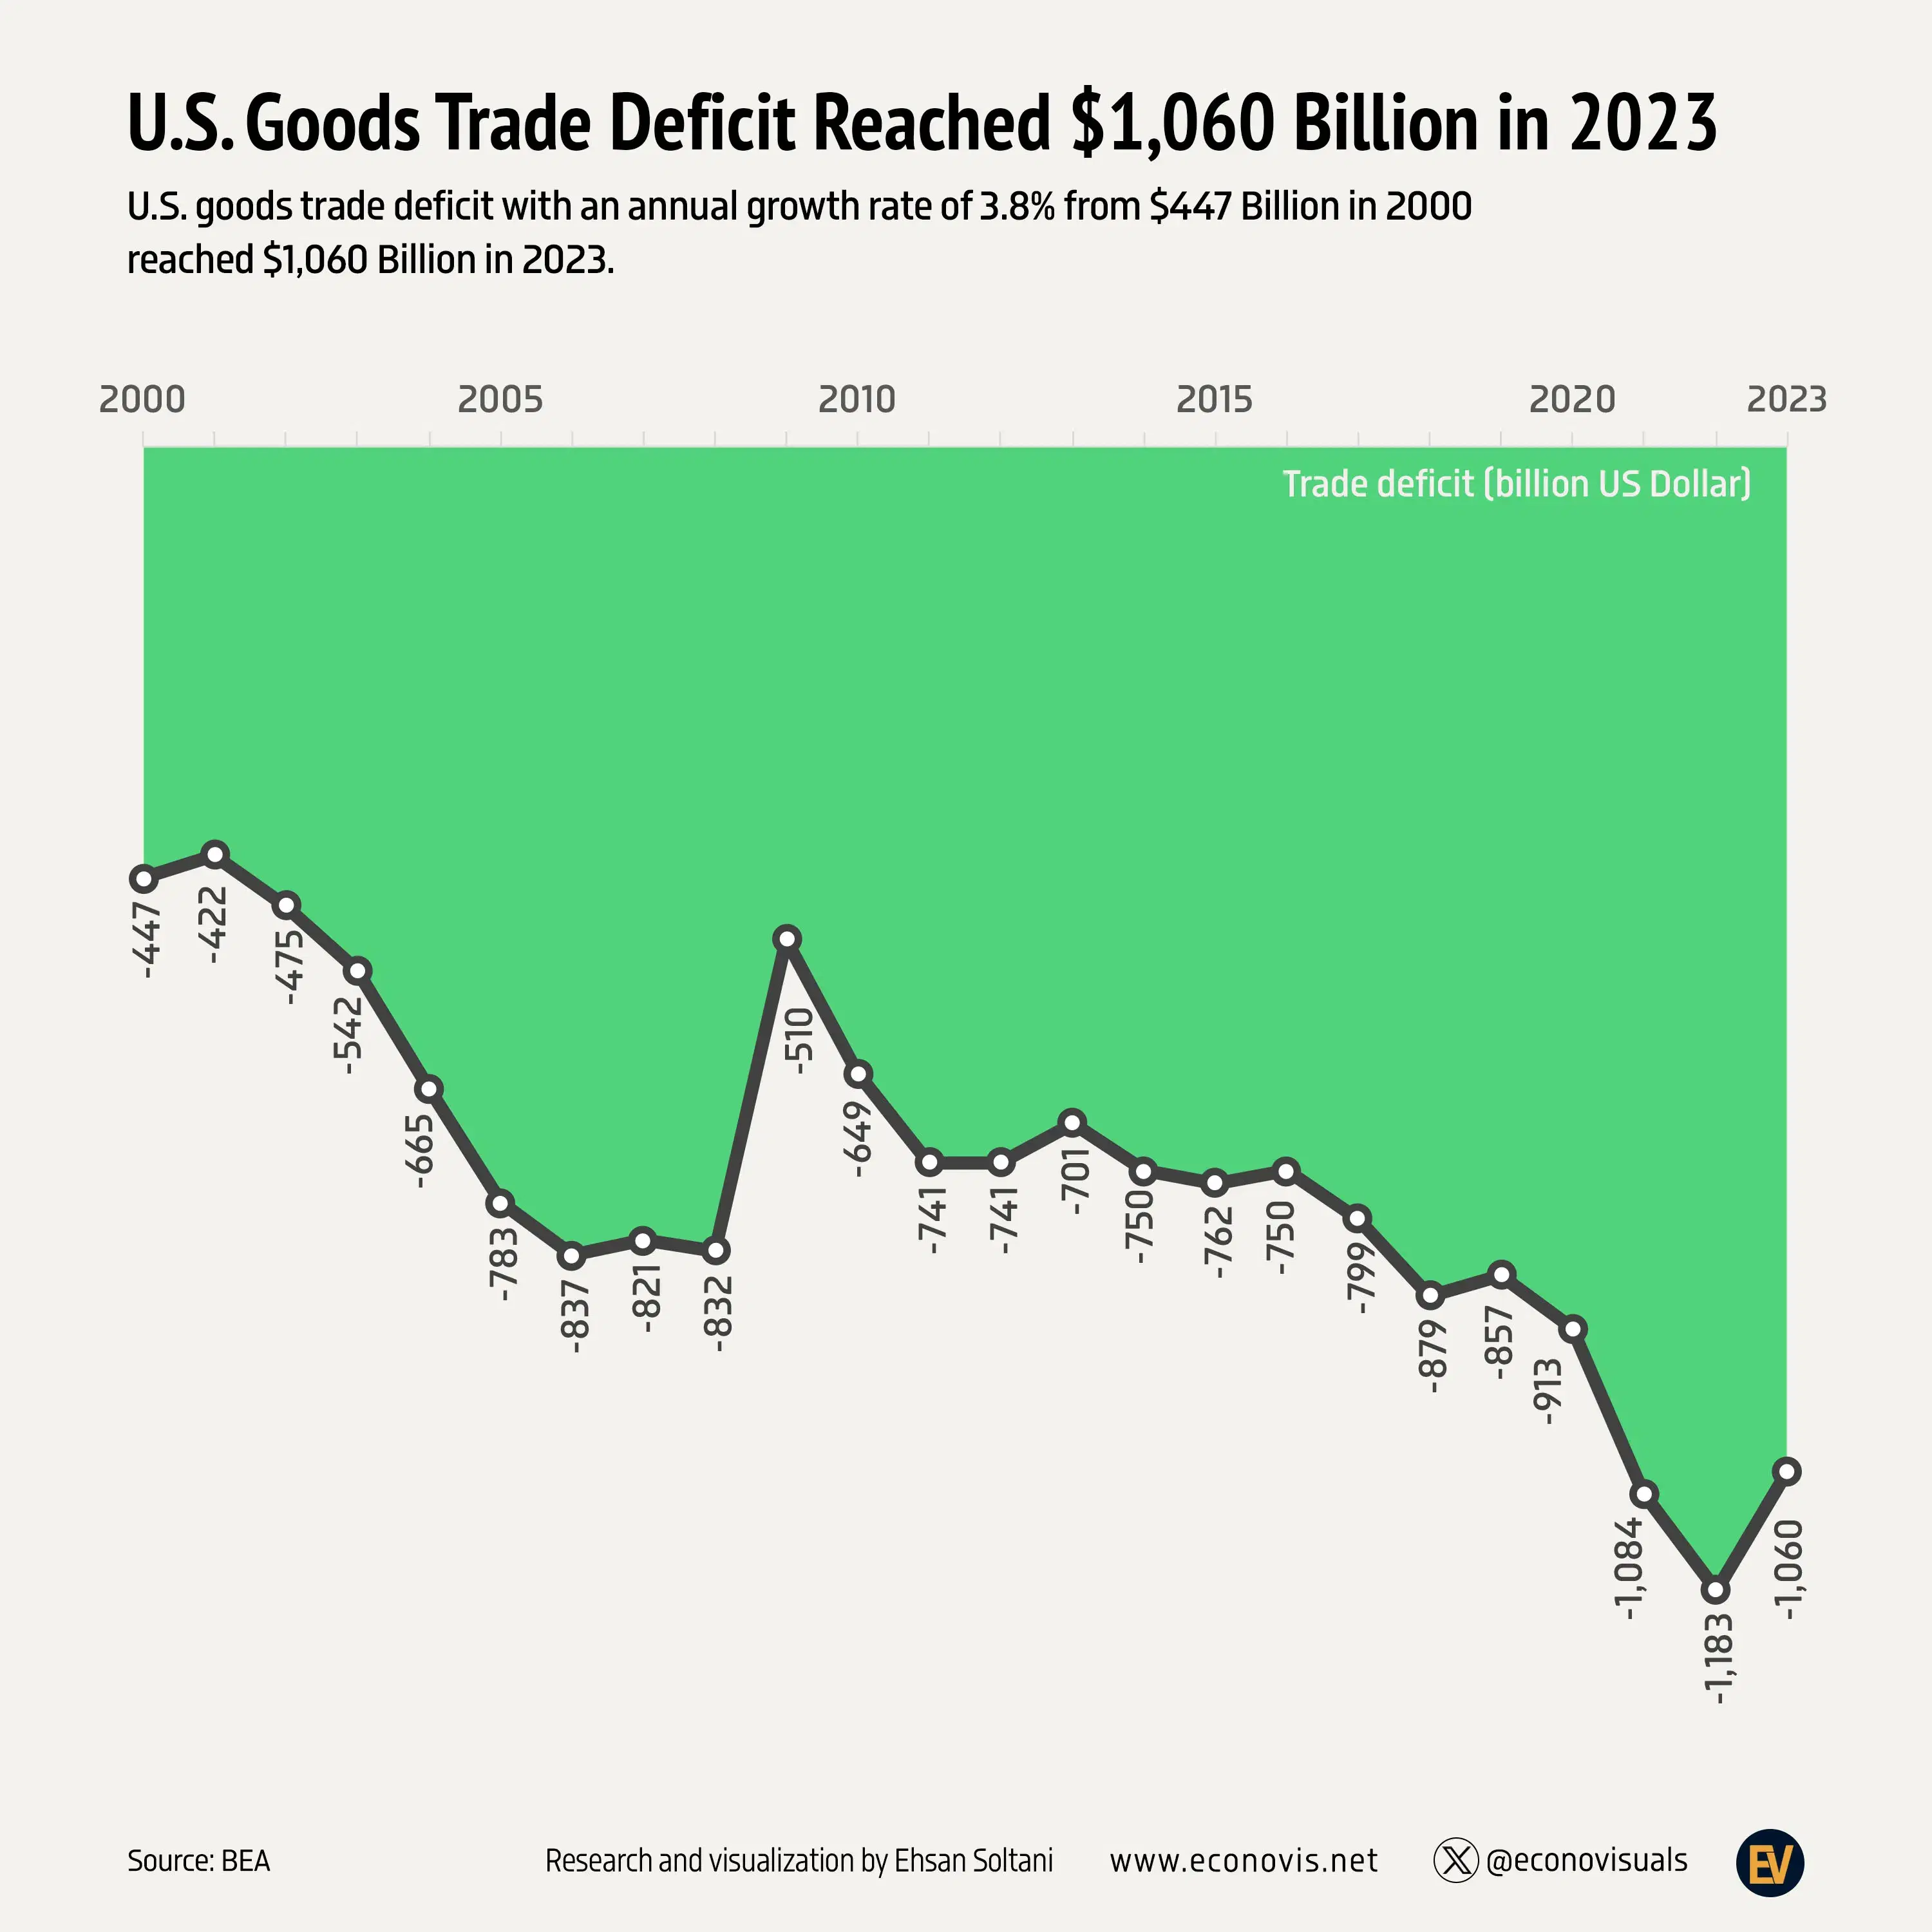 📈 U.S. Goods Trade Deficit Reached $1,060 Billion in 2023